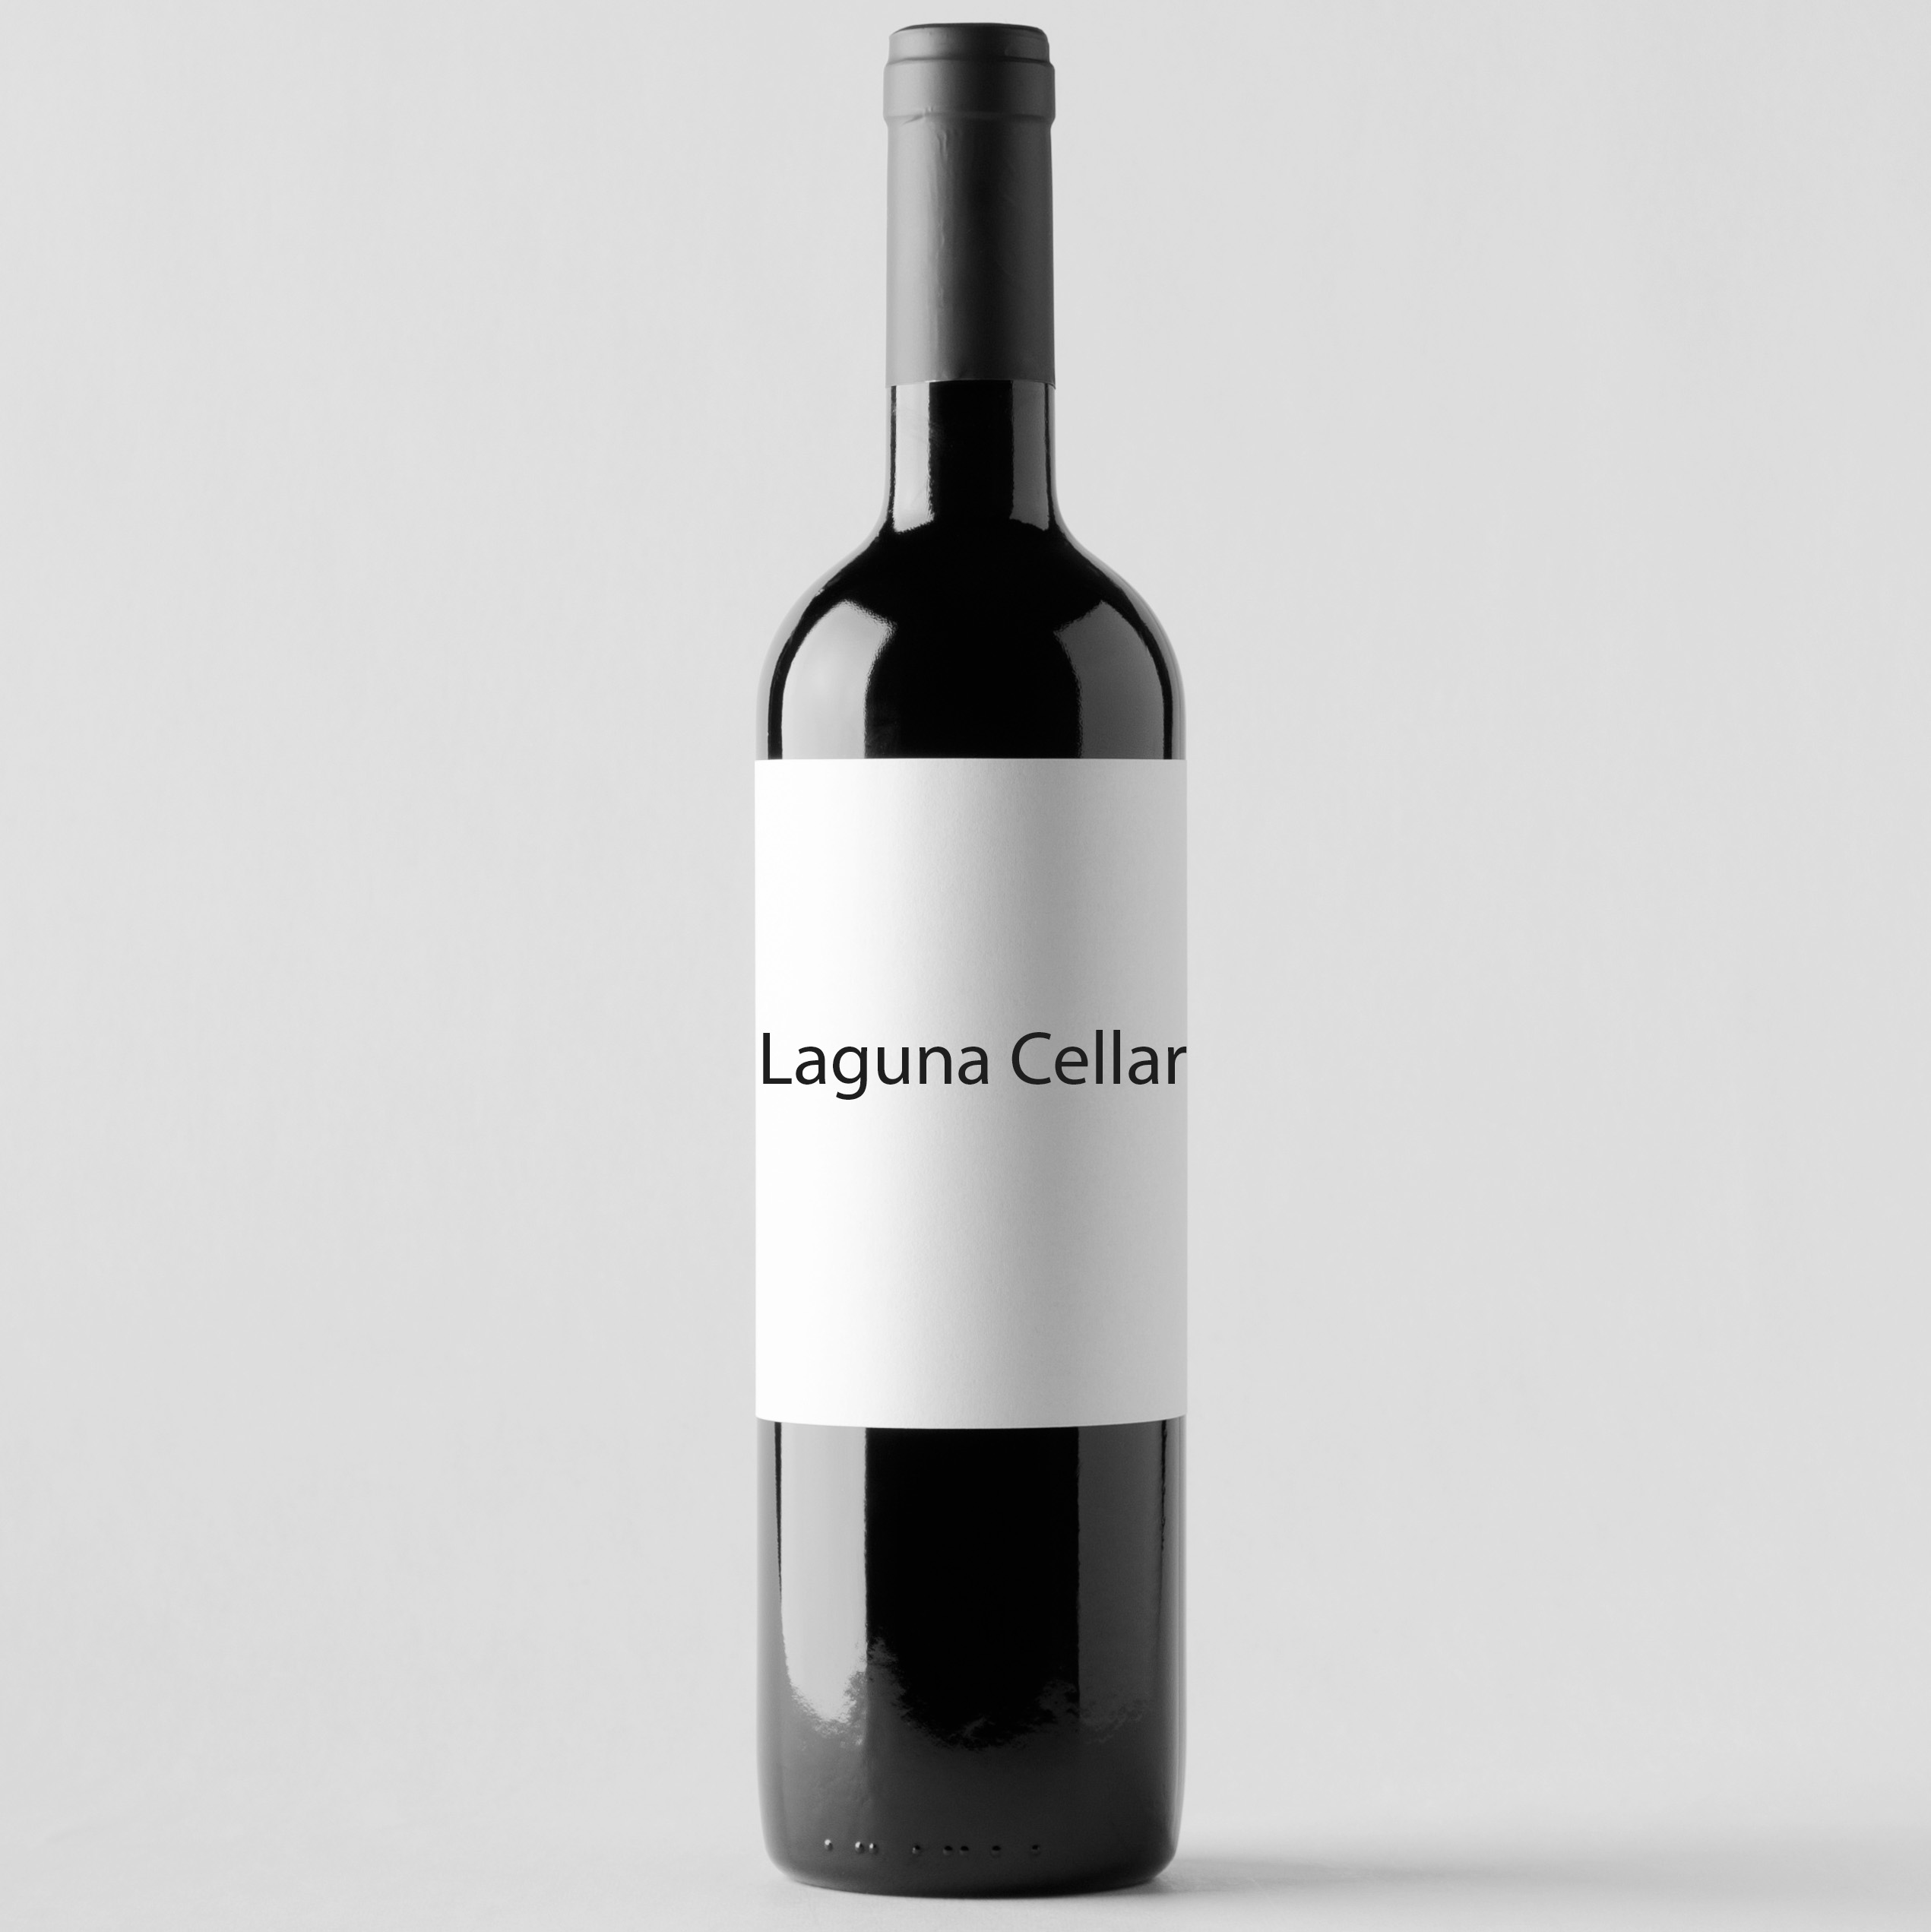 Laguna Cellar featuring Carruades de Lafite